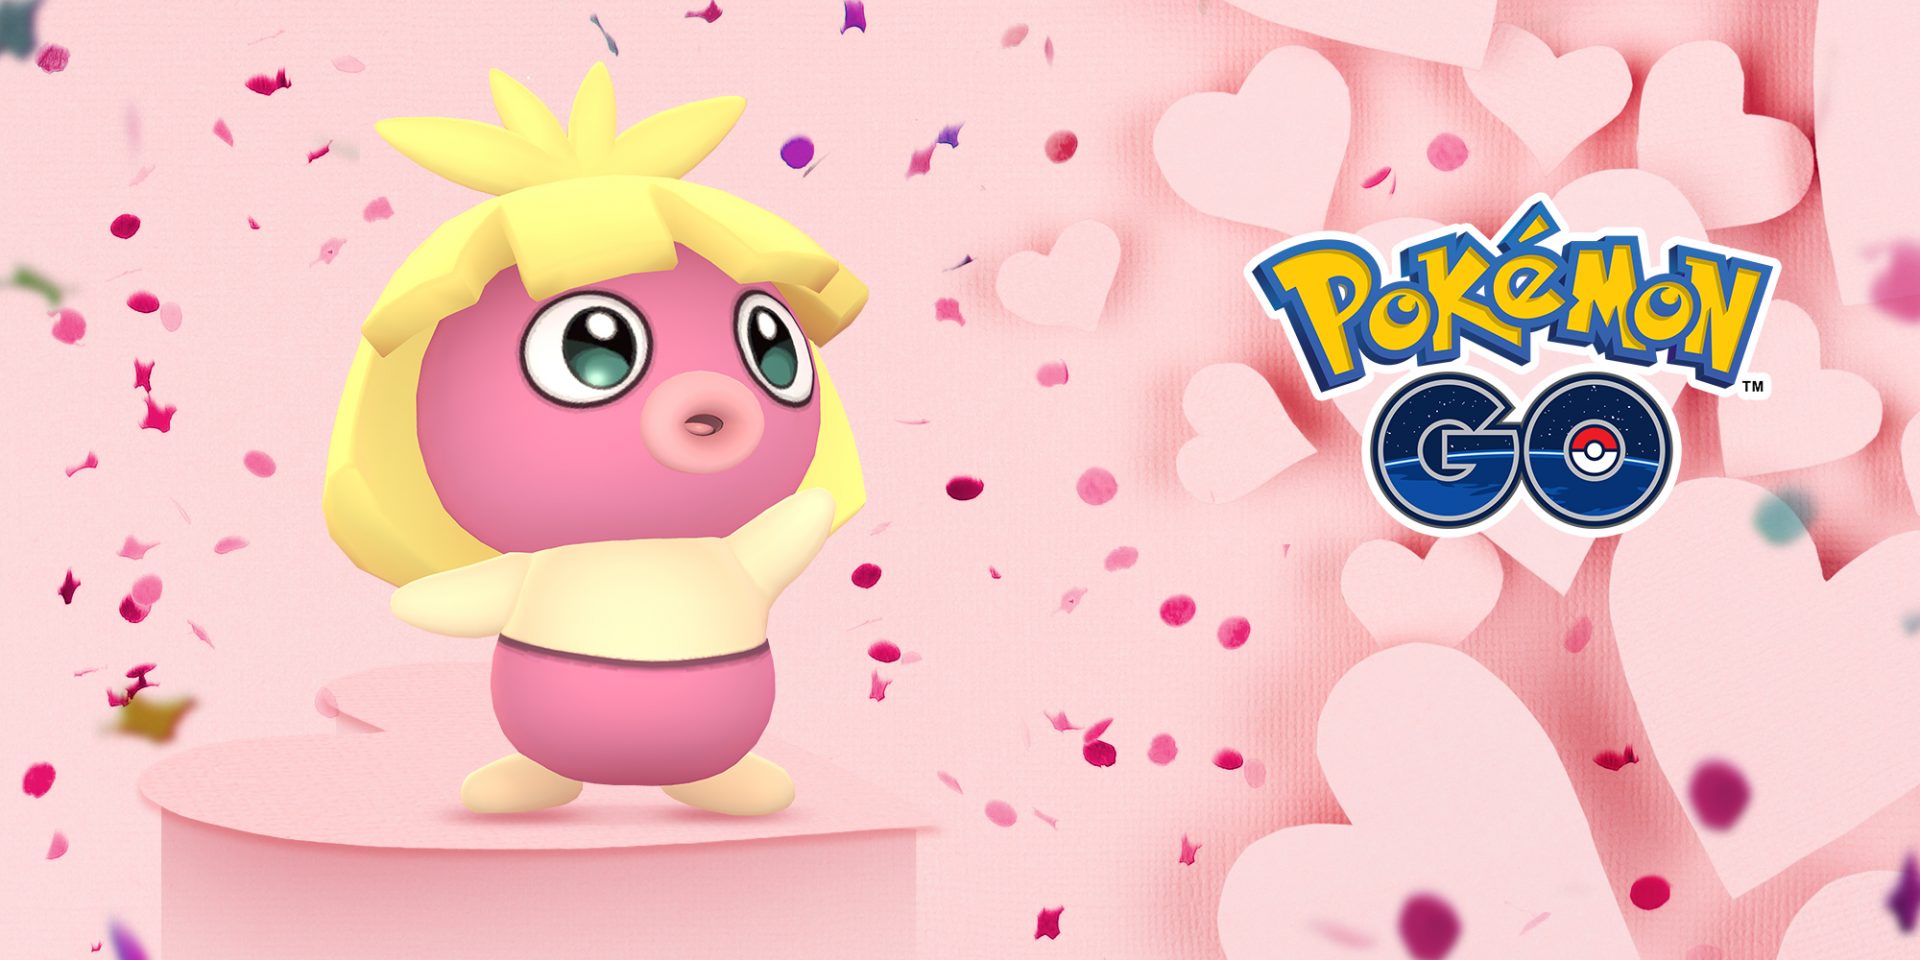 ให้มันเป็นสีชมพู!  Pokemon GO จัดกิจกรรมพิเศษต้อนรับวันวาเลนไทน์